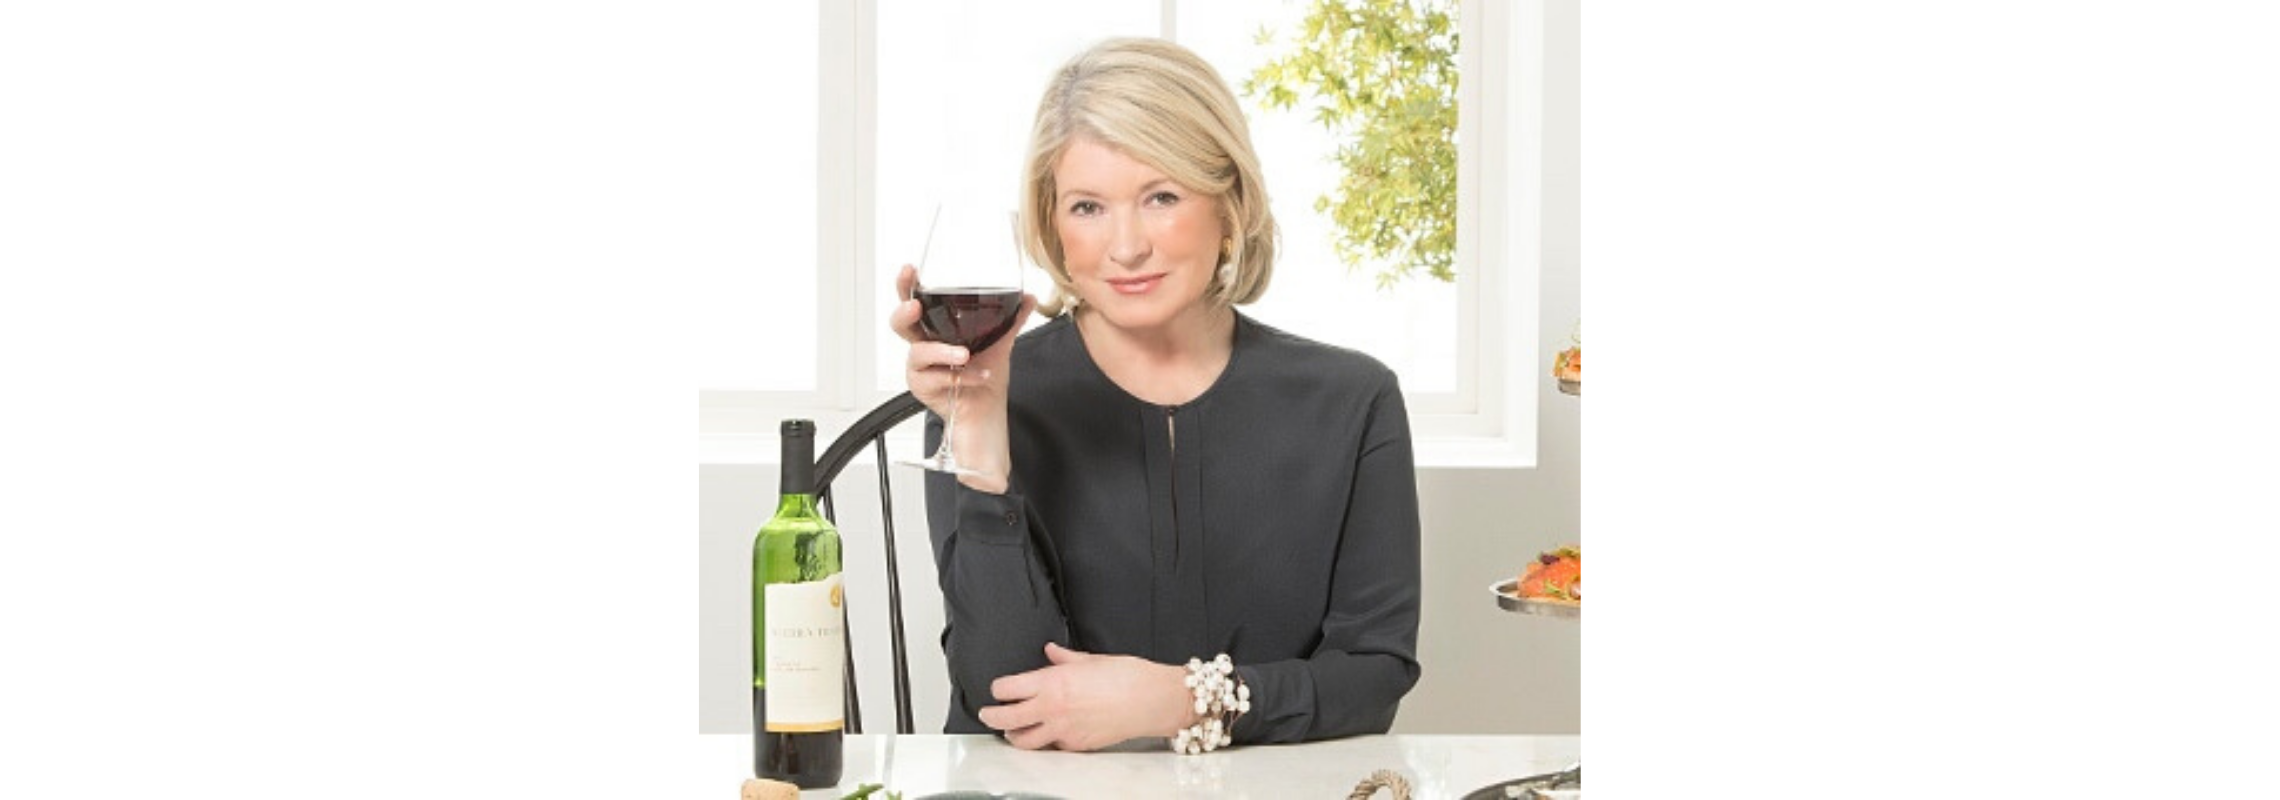 Martha Stewart Online Features WineBid as Best Wine App